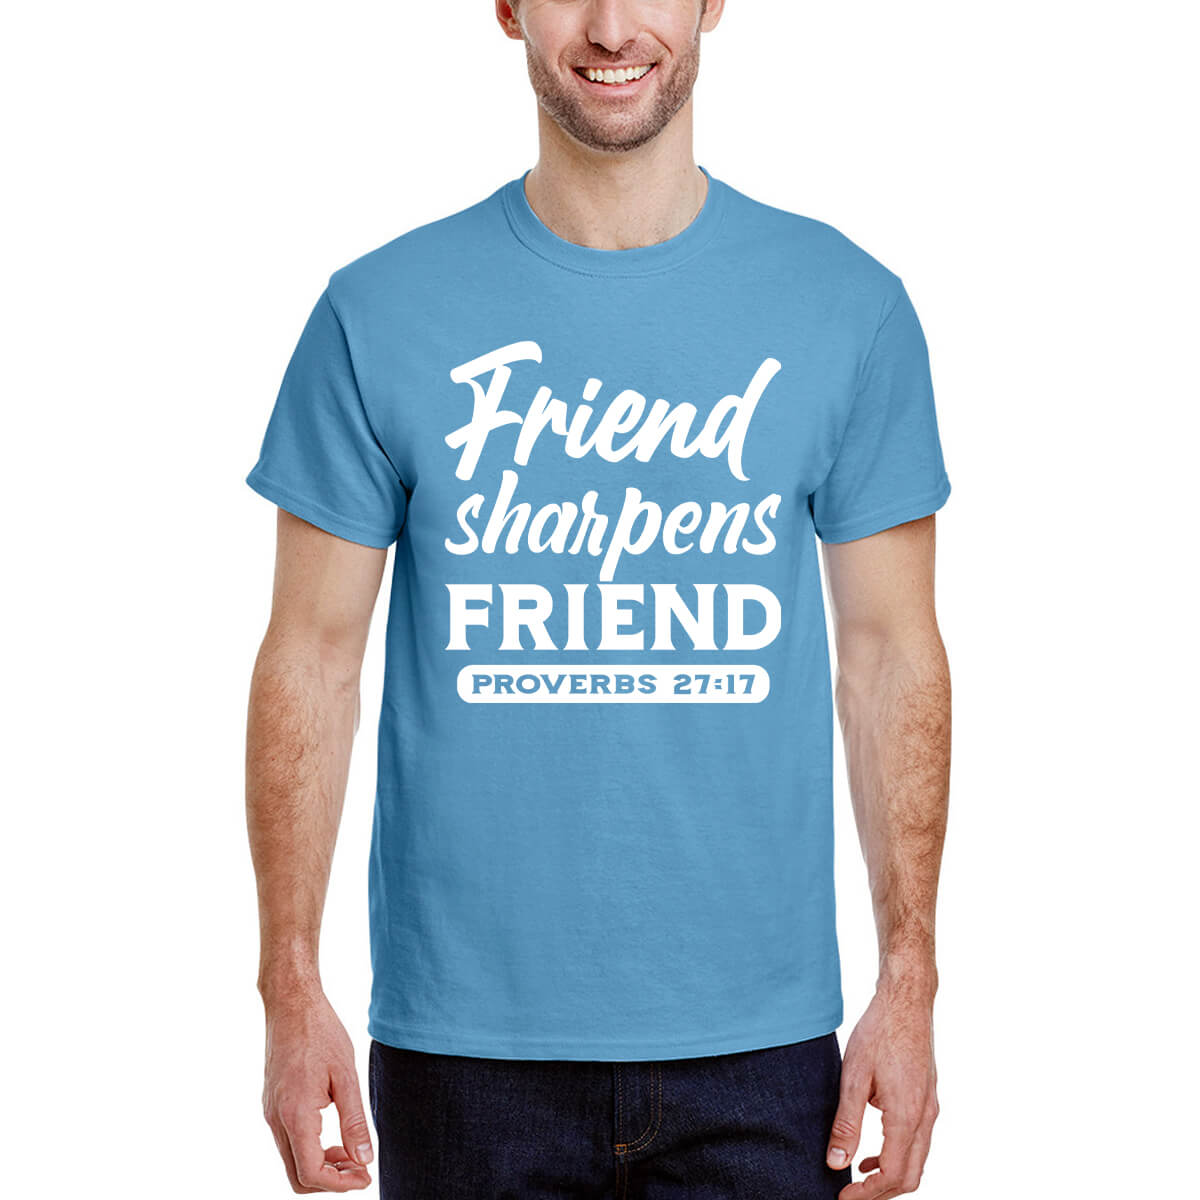 Friend Sharpens Friend Men's T-Shirt